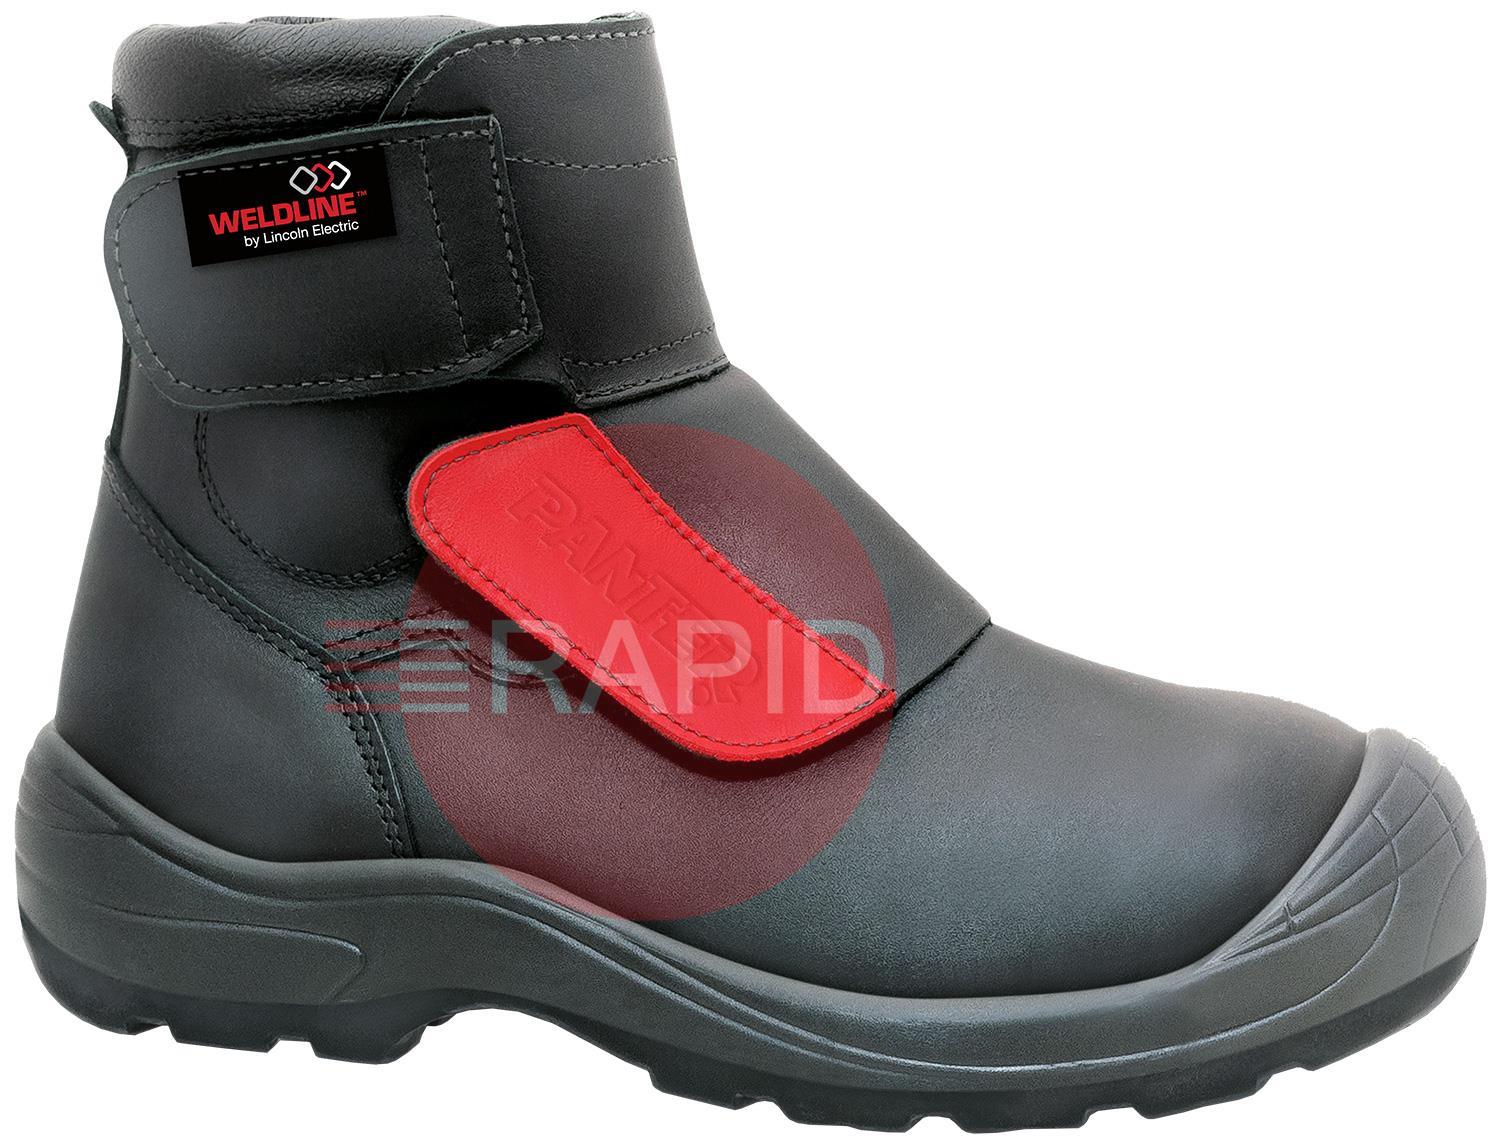 W49S3T44  Weldline Panter Fusion 49 S3 Welding Shoes - Size 44